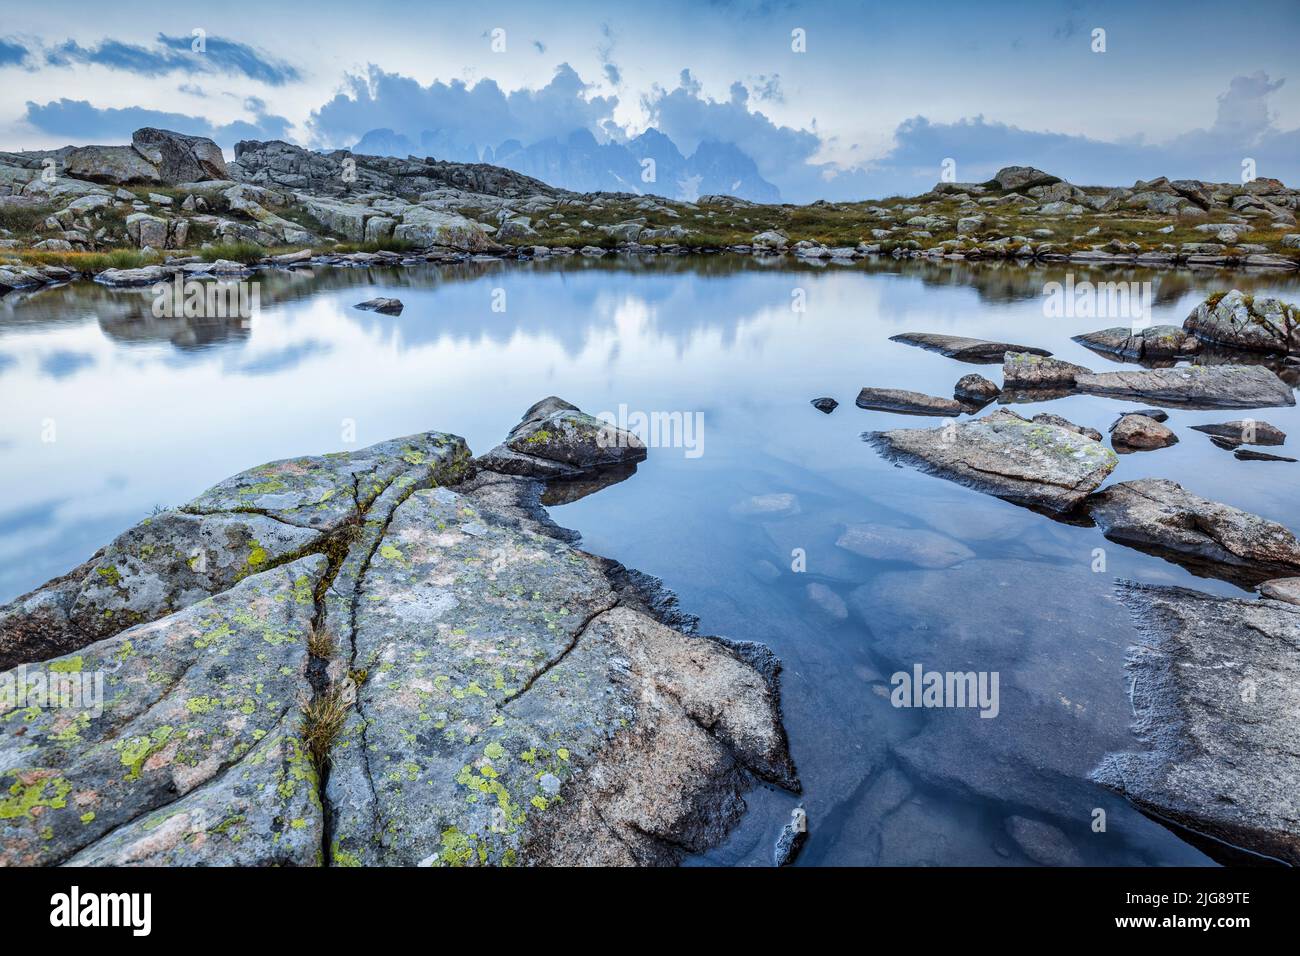 Italie, Trentin, province de Trento, petite zone humide alpine, étang, lacs de Juribrutto Banque D'Images